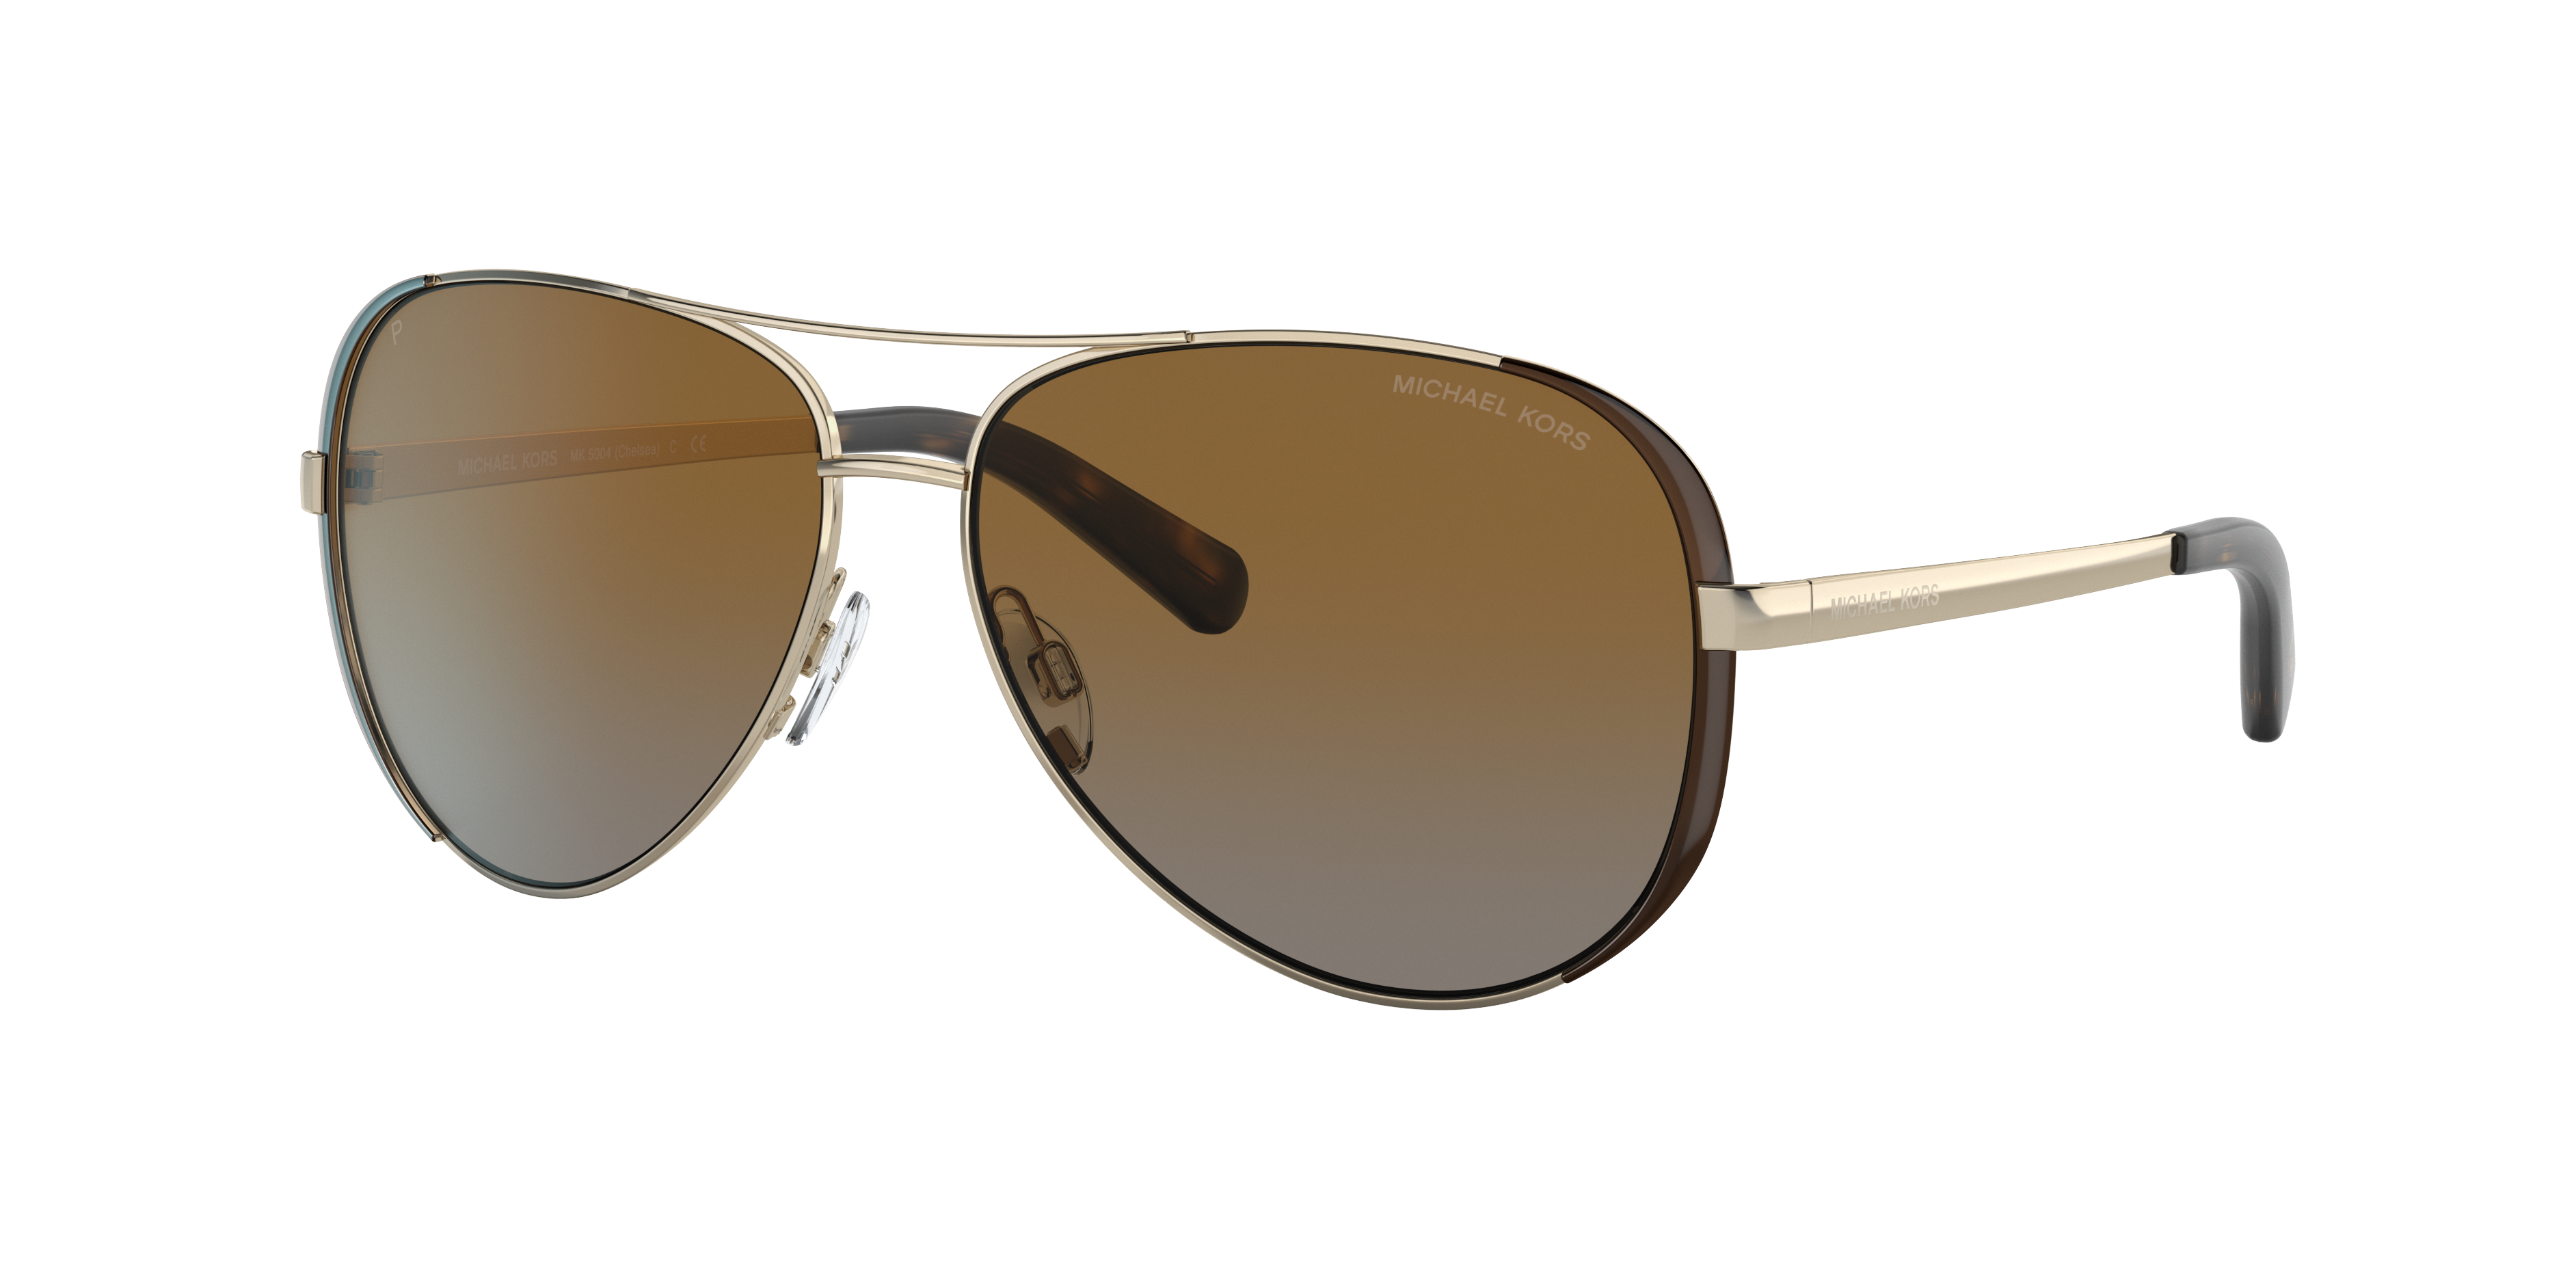 michael kors women's aviator sunglasses